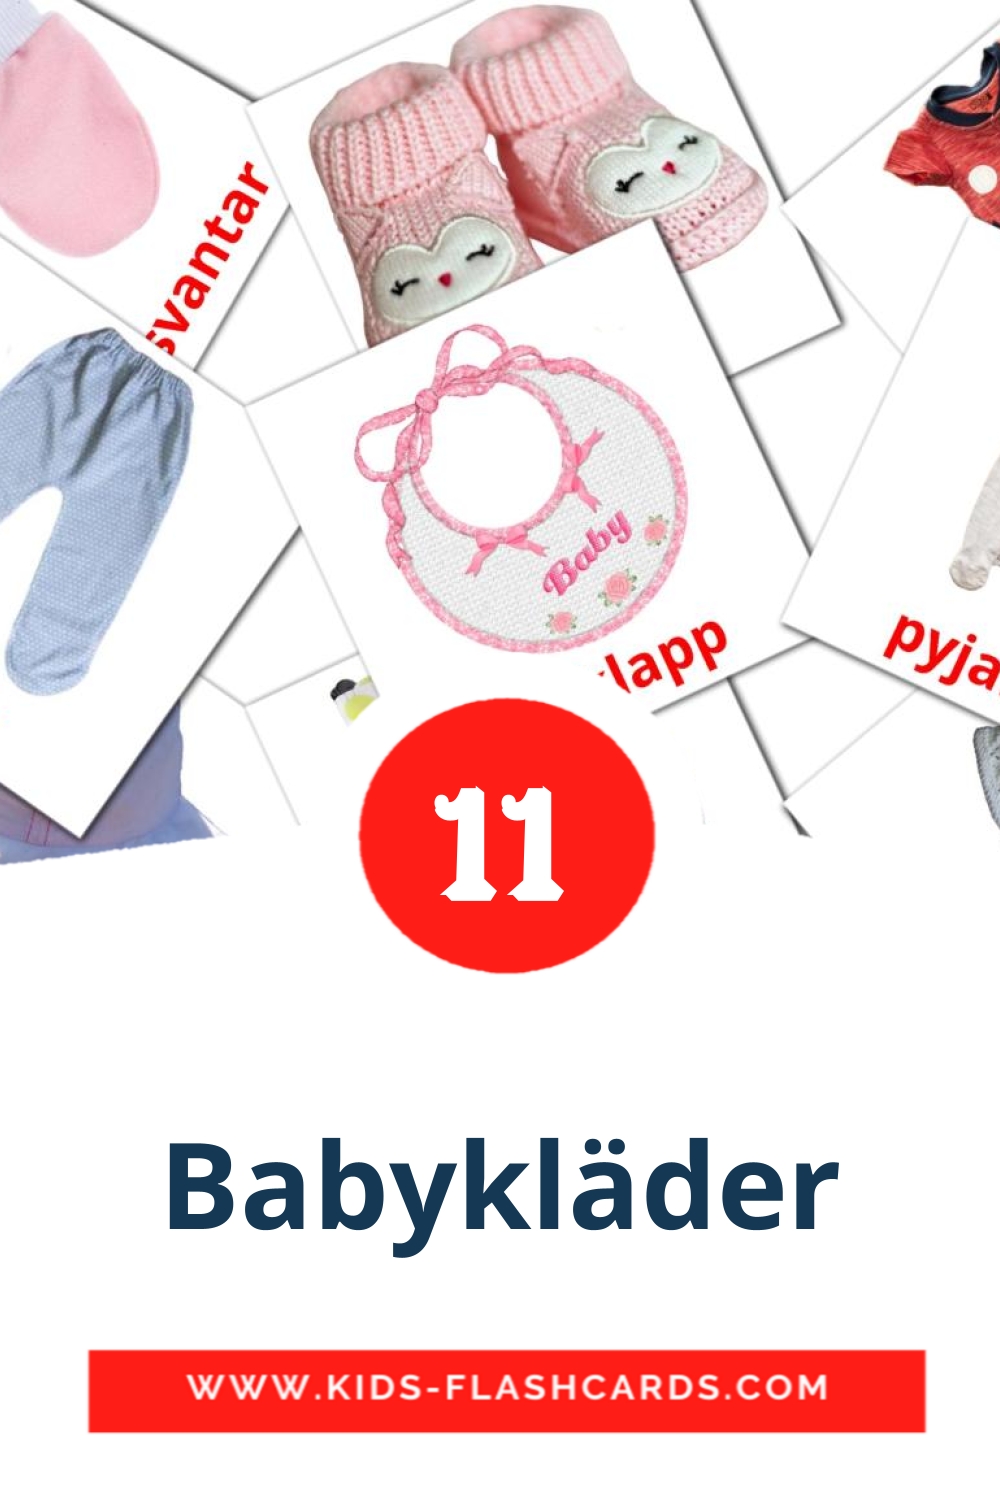 12 tarjetas didacticas de babykläder para el jardín de infancia en sueco